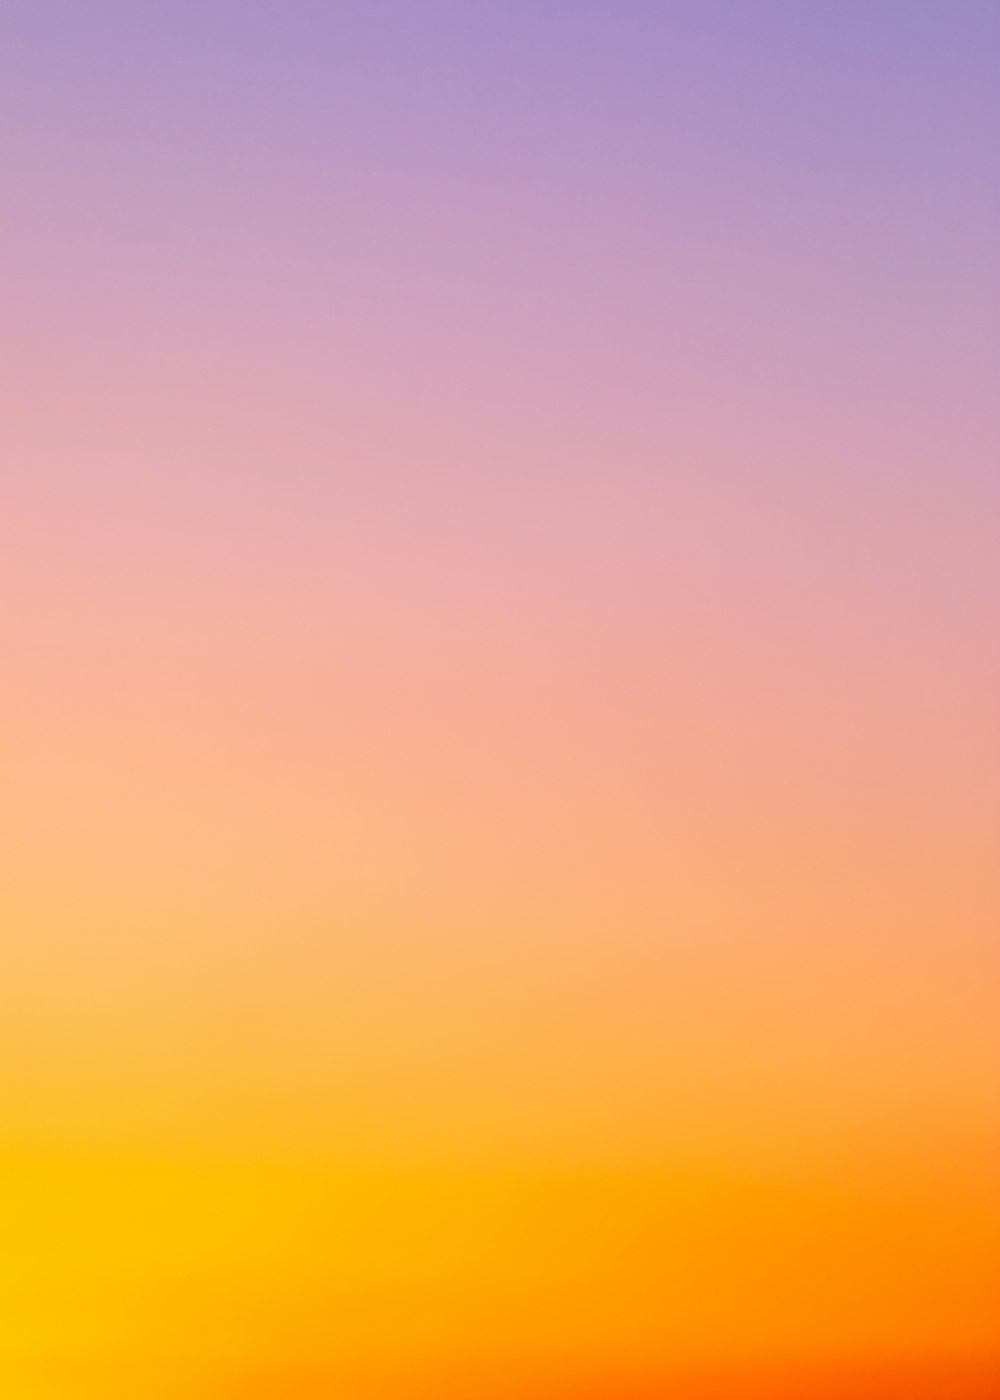 Trời màu cam HD sẽ khiến bạn không thể rời mắt khỏi bức tranh thiên nhiên hoang dã và kỳ lạ này. Hãy tận hưởng màu sắc chuyển động của bầu trời từ lúc mặt trời lên cho đến khi hoàng hôn xuống, để cùng cảm nhận sự hoà quyện giữa thiên nhiên và ánh sáng.